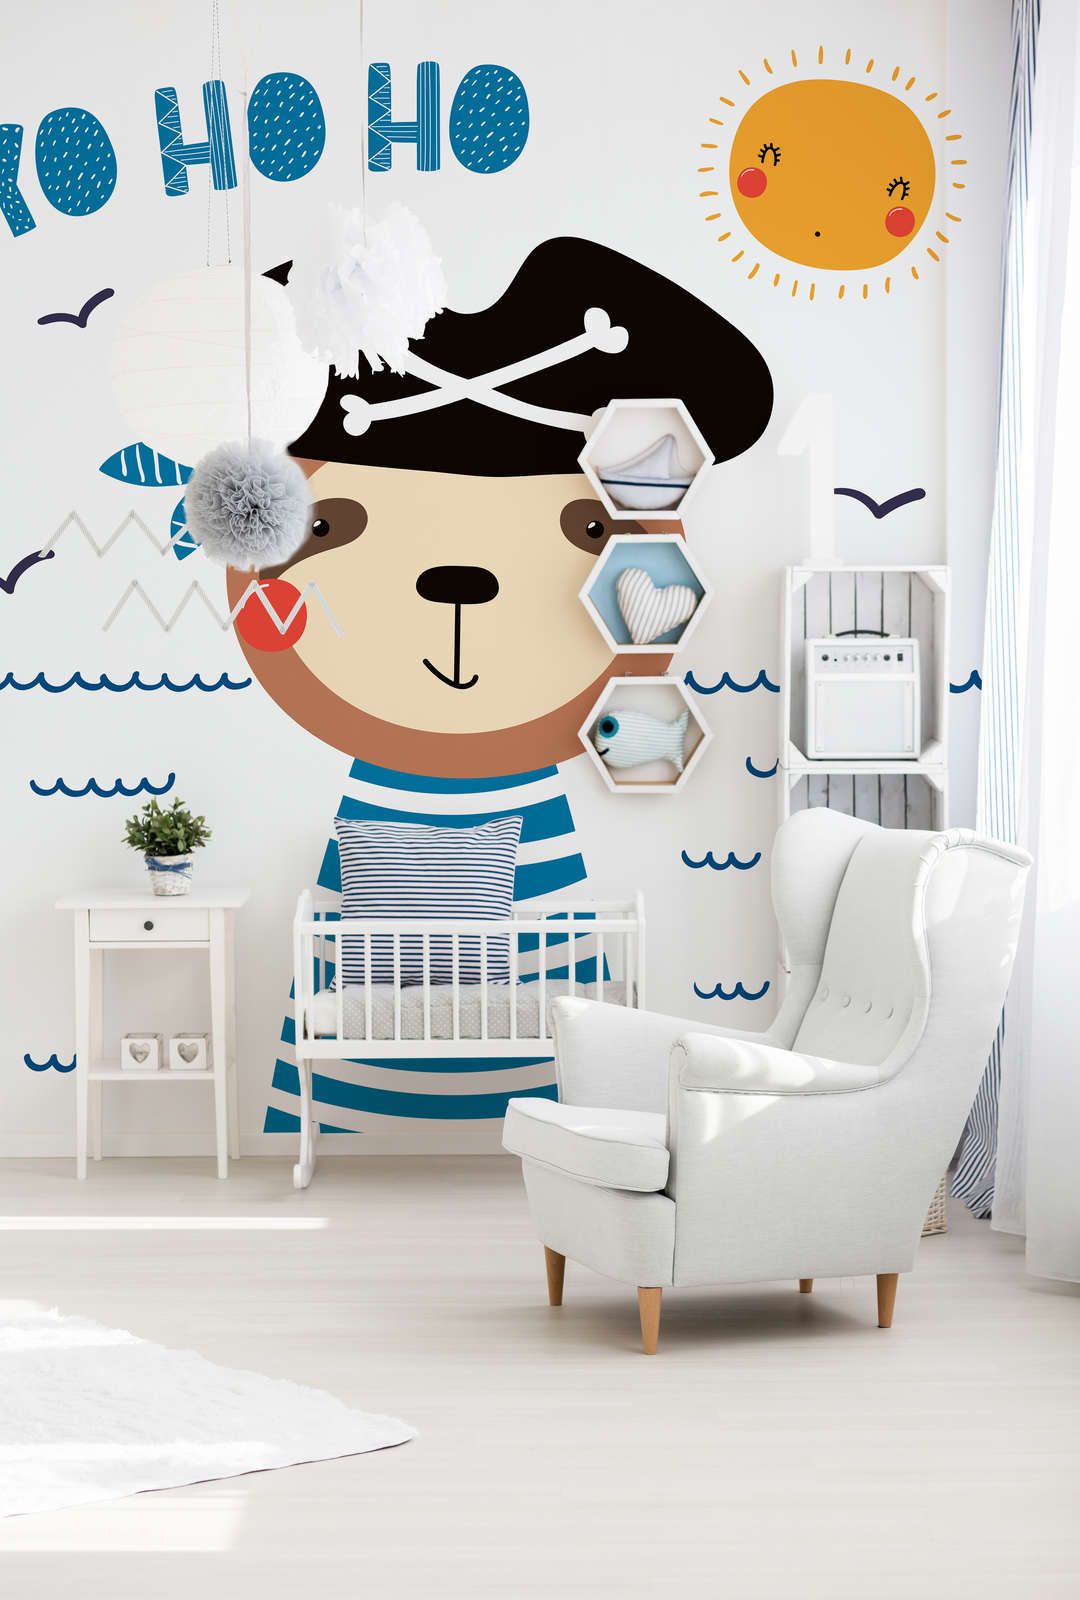             Fototapete fürs Kinderzimmer mit Bären-Pirat – Glattes & leicht glänzendes Vlies
        